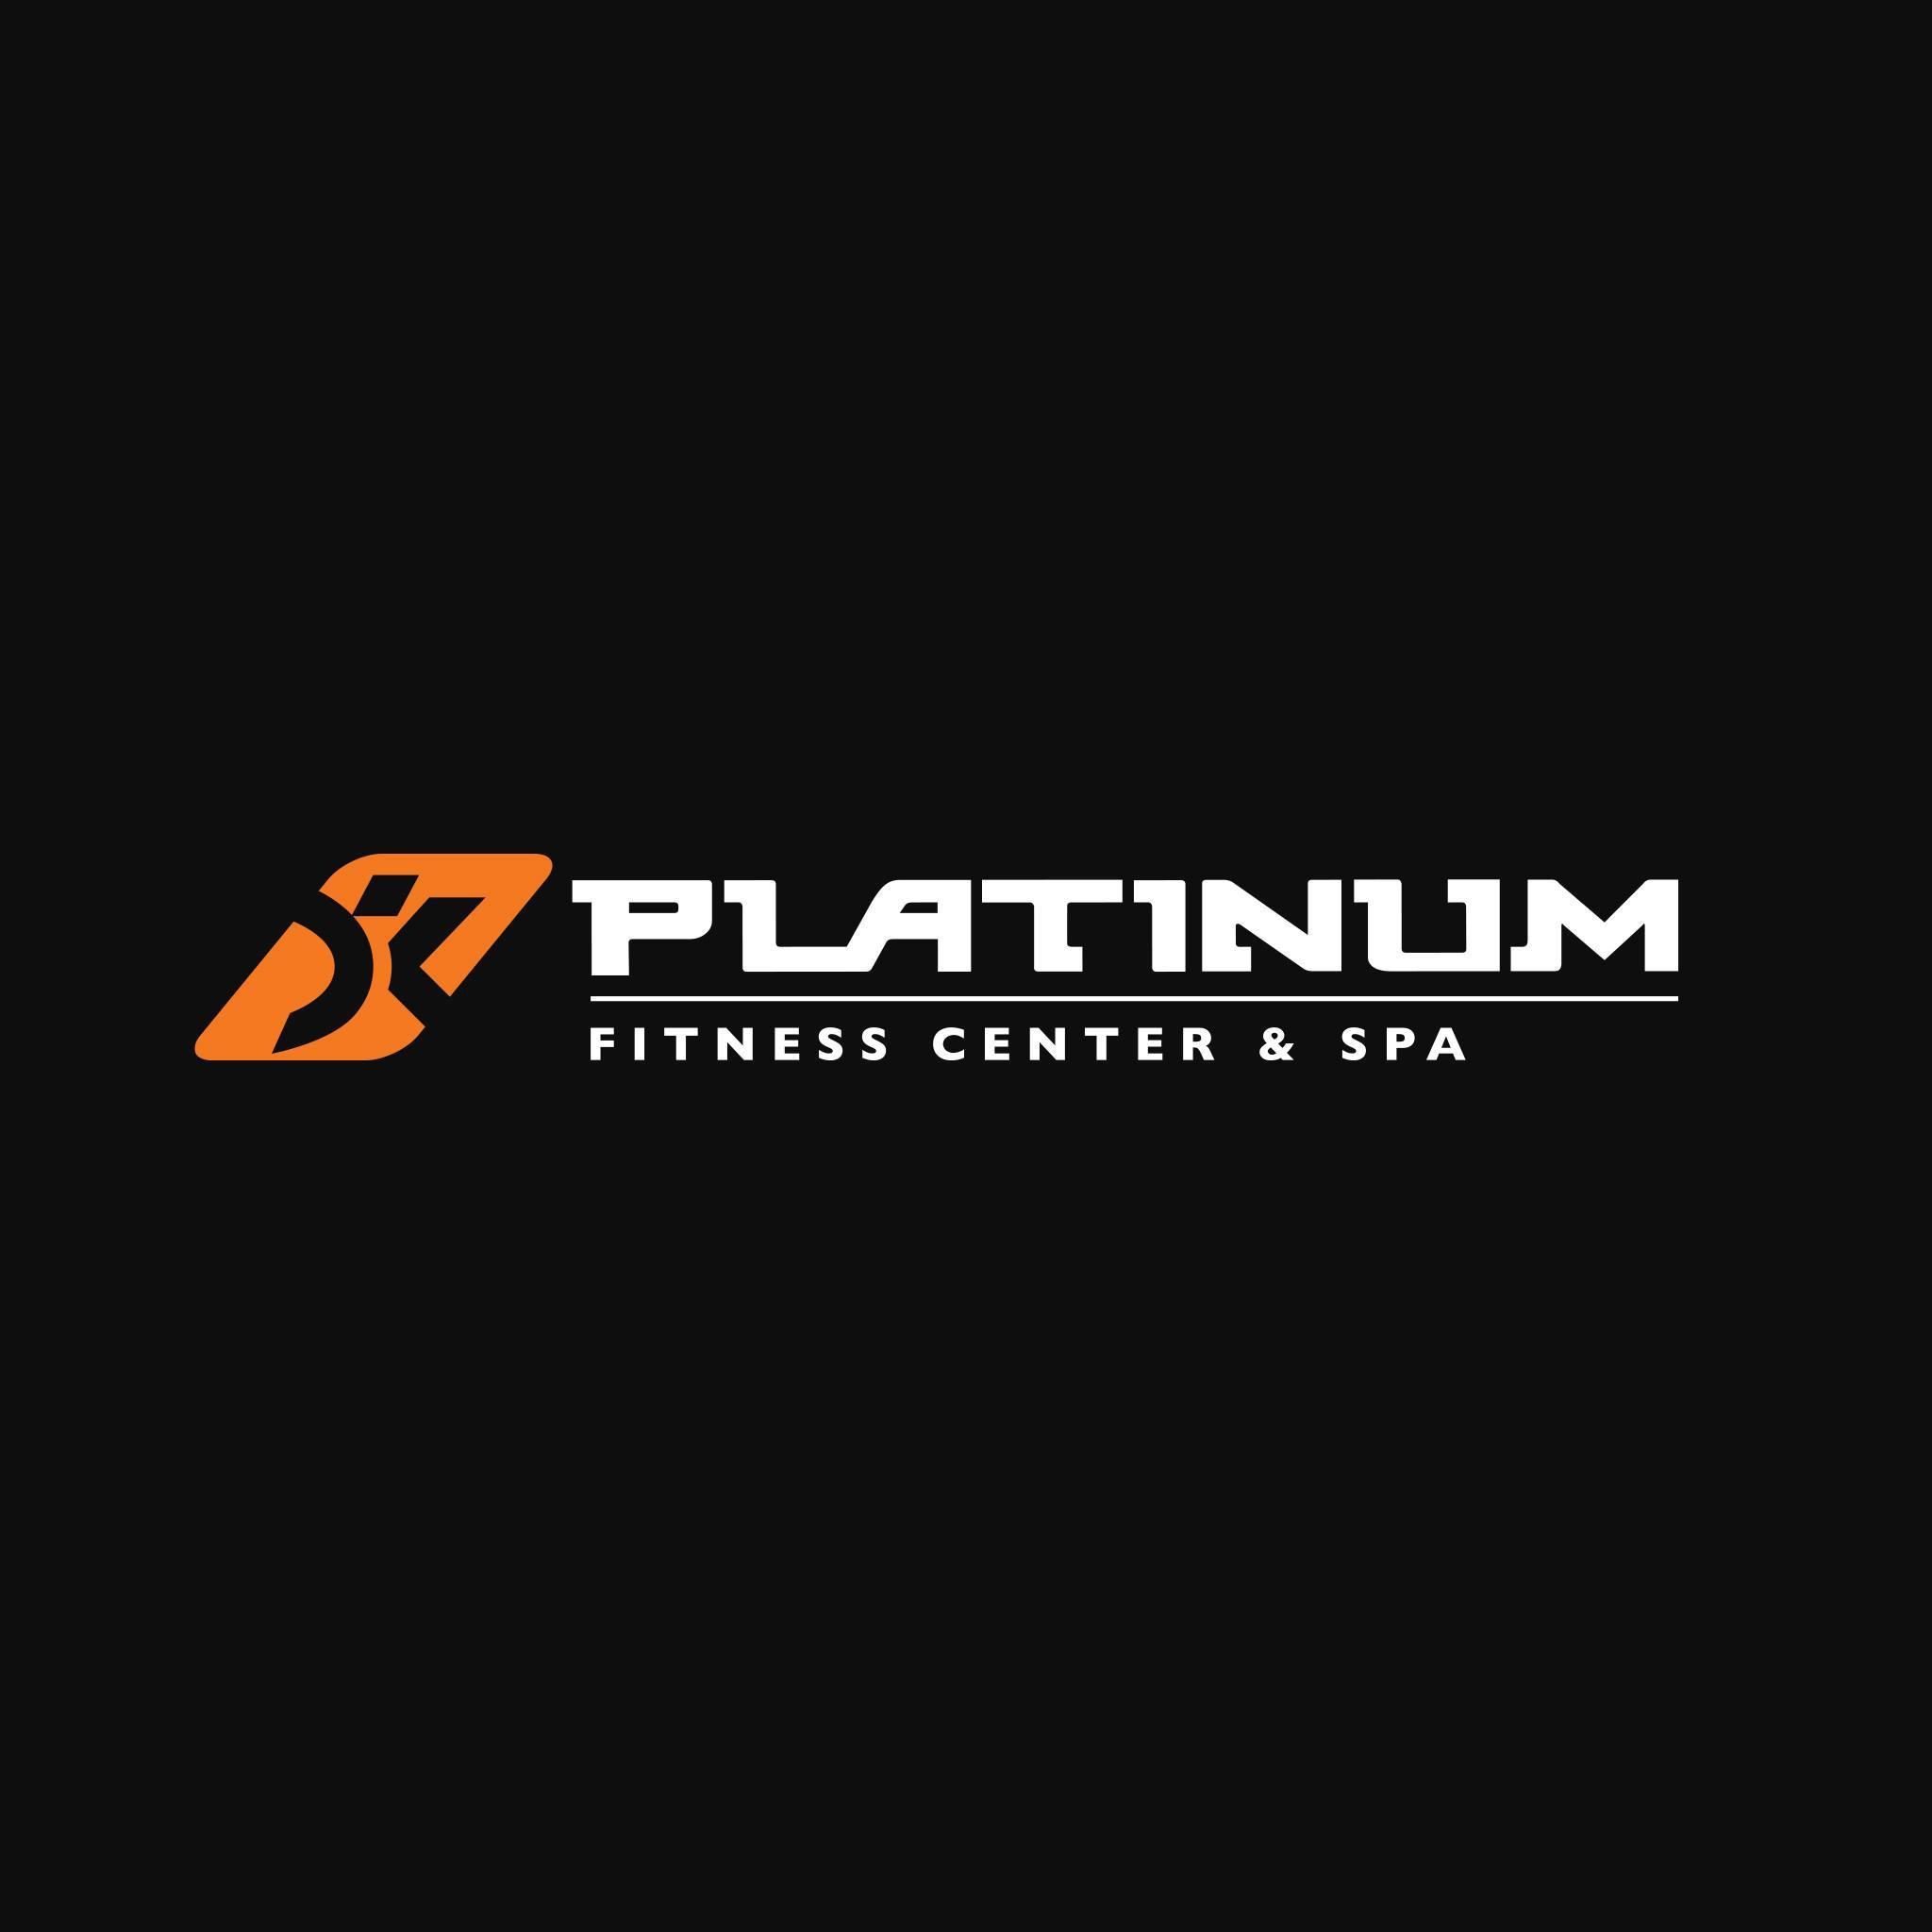 Platinum Fitness Center Spa Logo